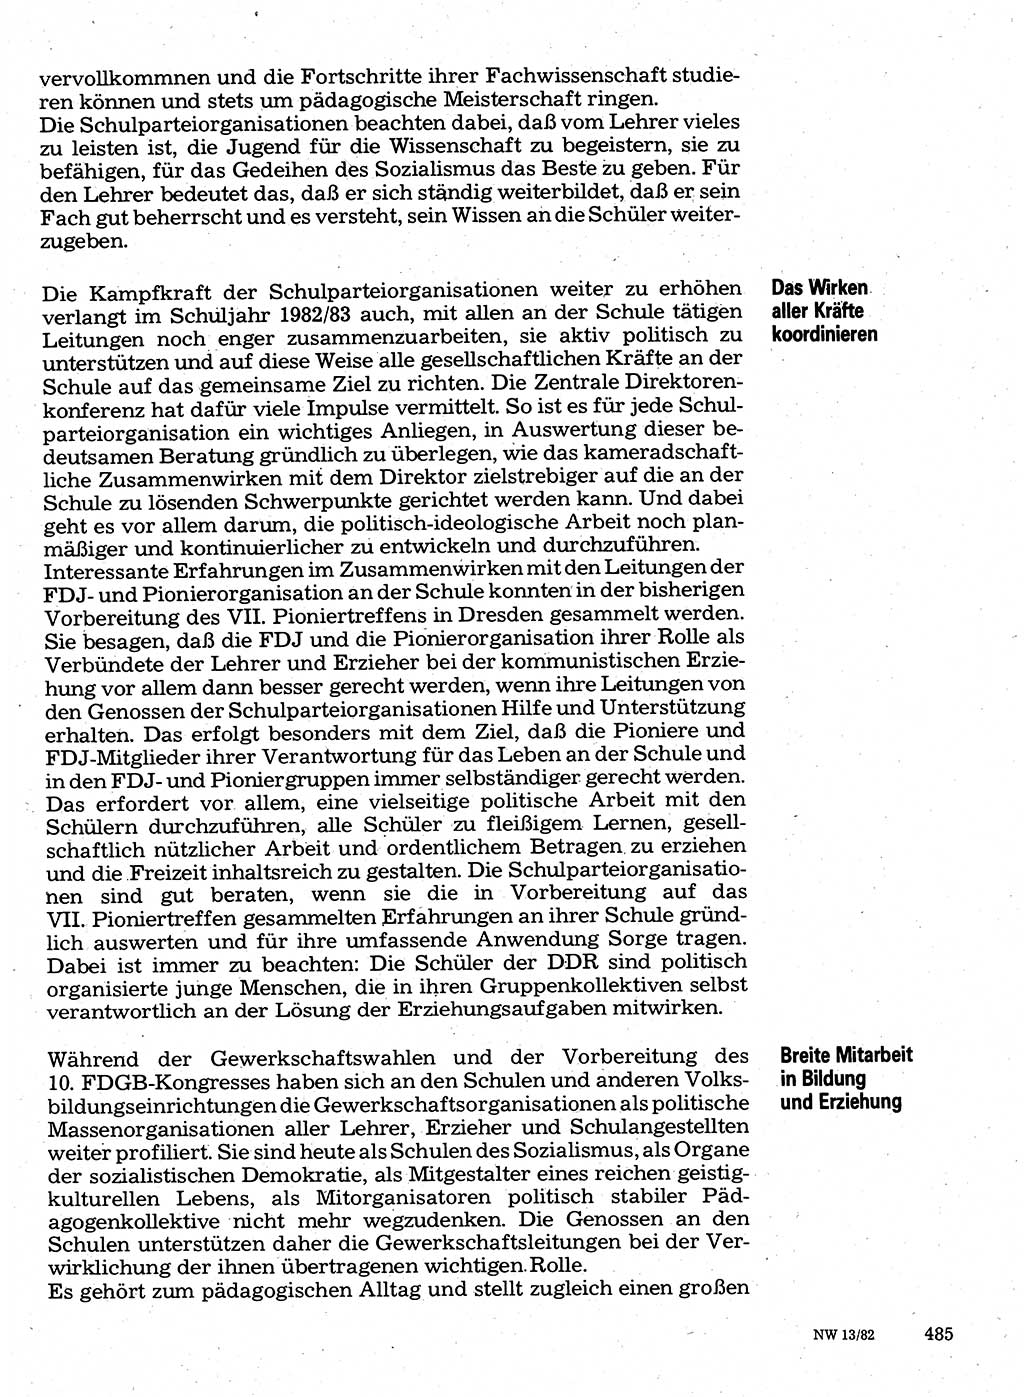 Neuer Weg (NW), Organ des Zentralkomitees (ZK) der SED (Sozialistische Einheitspartei Deutschlands) für Fragen des Parteilebens, 37. Jahrgang [Deutsche Demokratische Republik (DDR)] 1982, Seite 485 (NW ZK SED DDR 1982, S. 485)